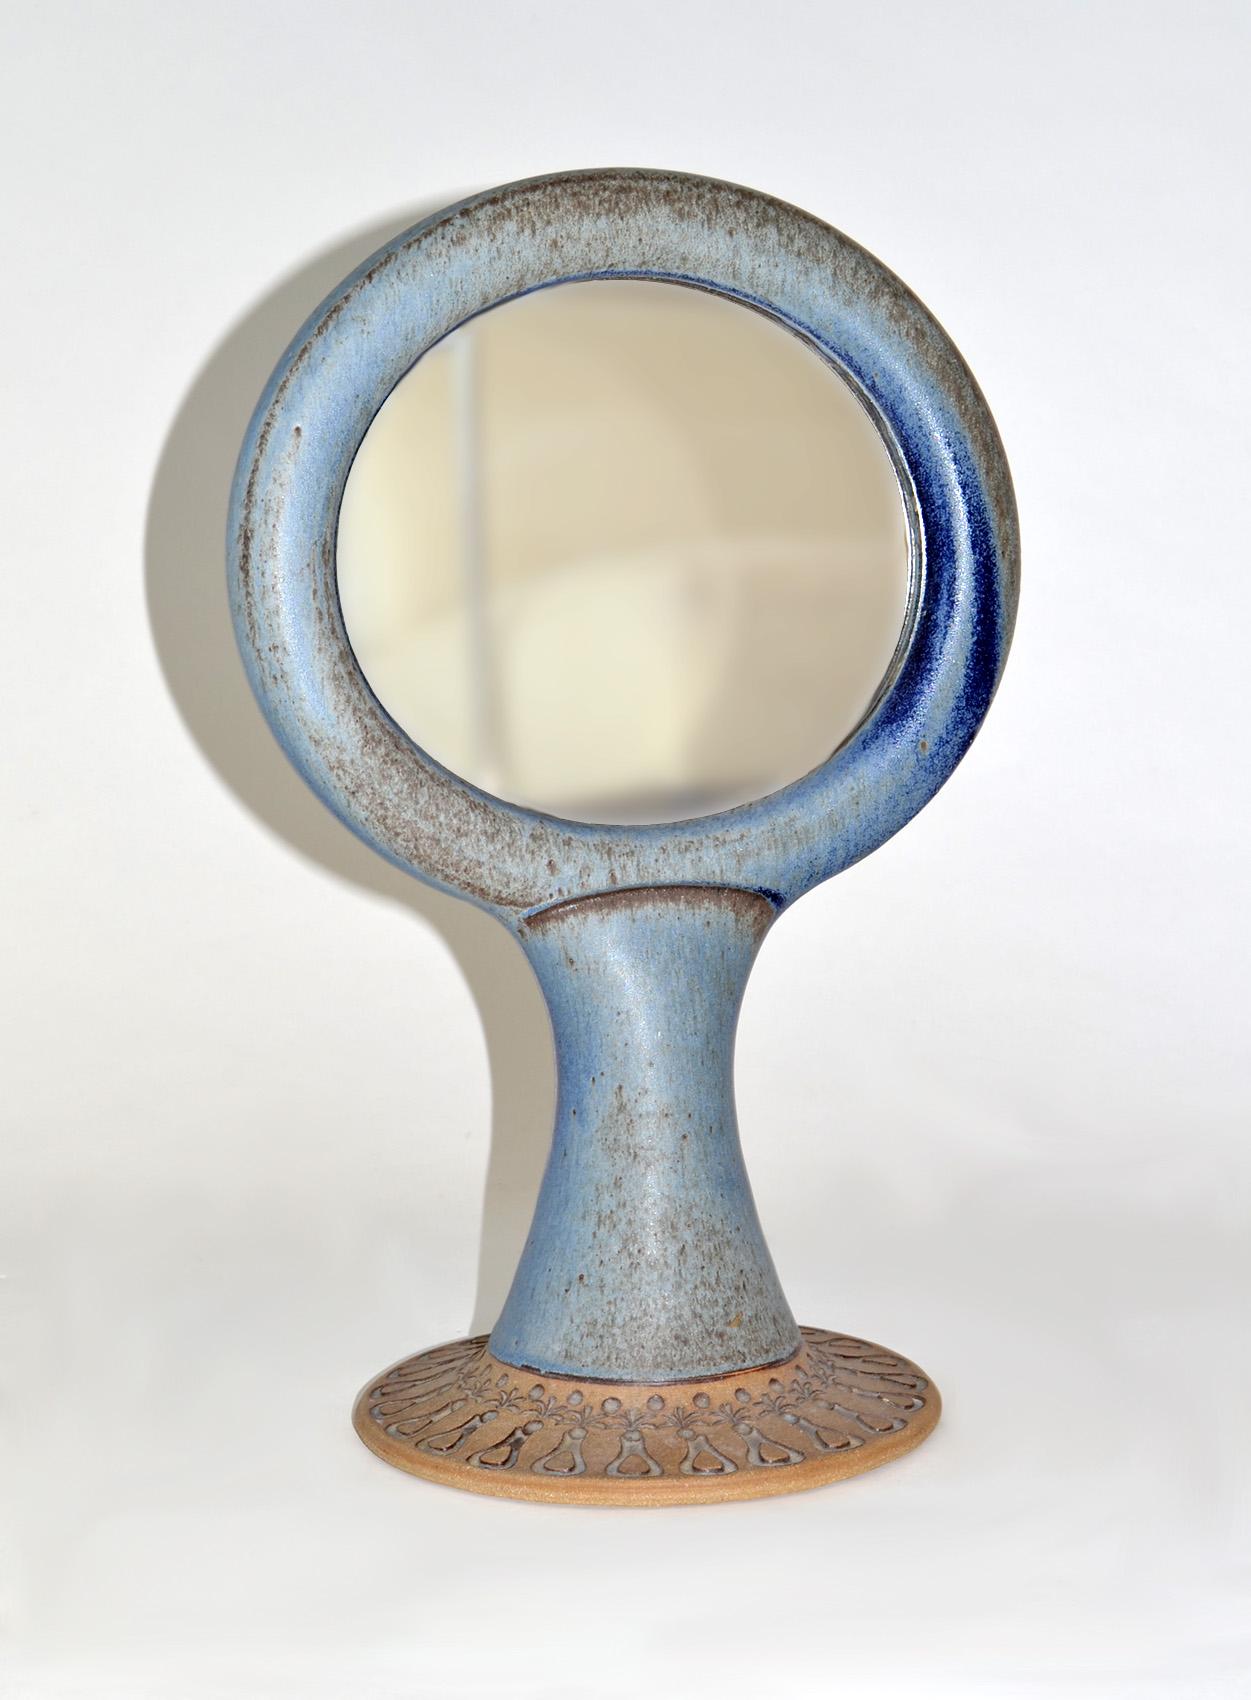 Einzigartiger zweiseitiger Waschtisch- oder Tischspiegel aus glasierter Keramik, Studio Pottery, 1960er Jahre
Schöne blaue und braune Glasuren und Ritzungen im schwedischen Stil. Wiederholung des organischen Designs auf der Basis. Im Stil von Stig